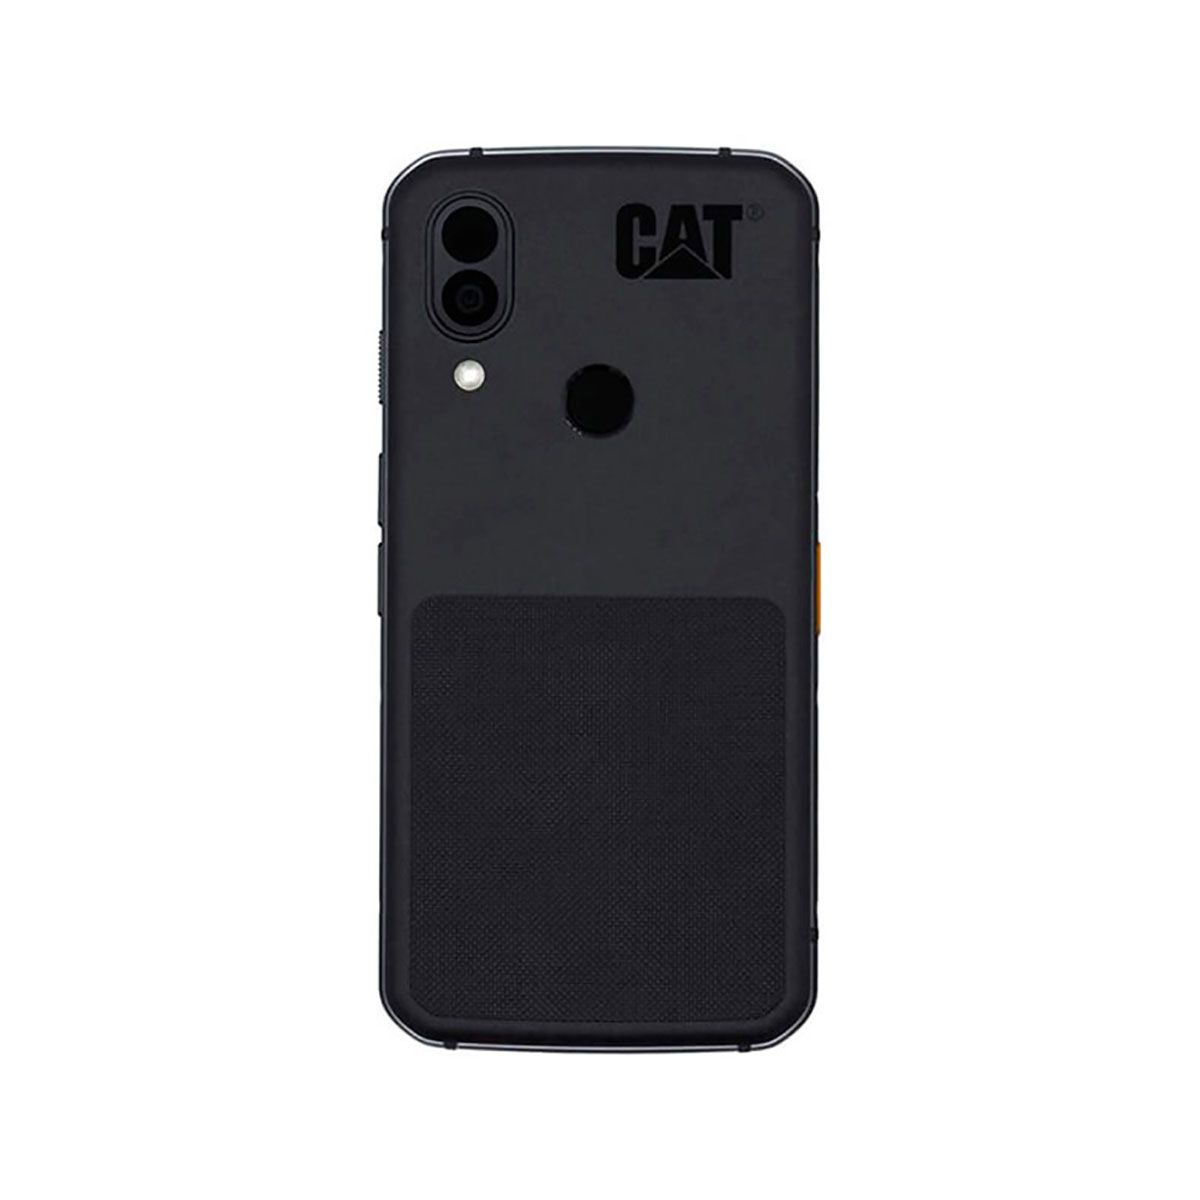 Caterpilar CAT S62 Pro 6 Go/128 Go Noir (Noir) Double SIM